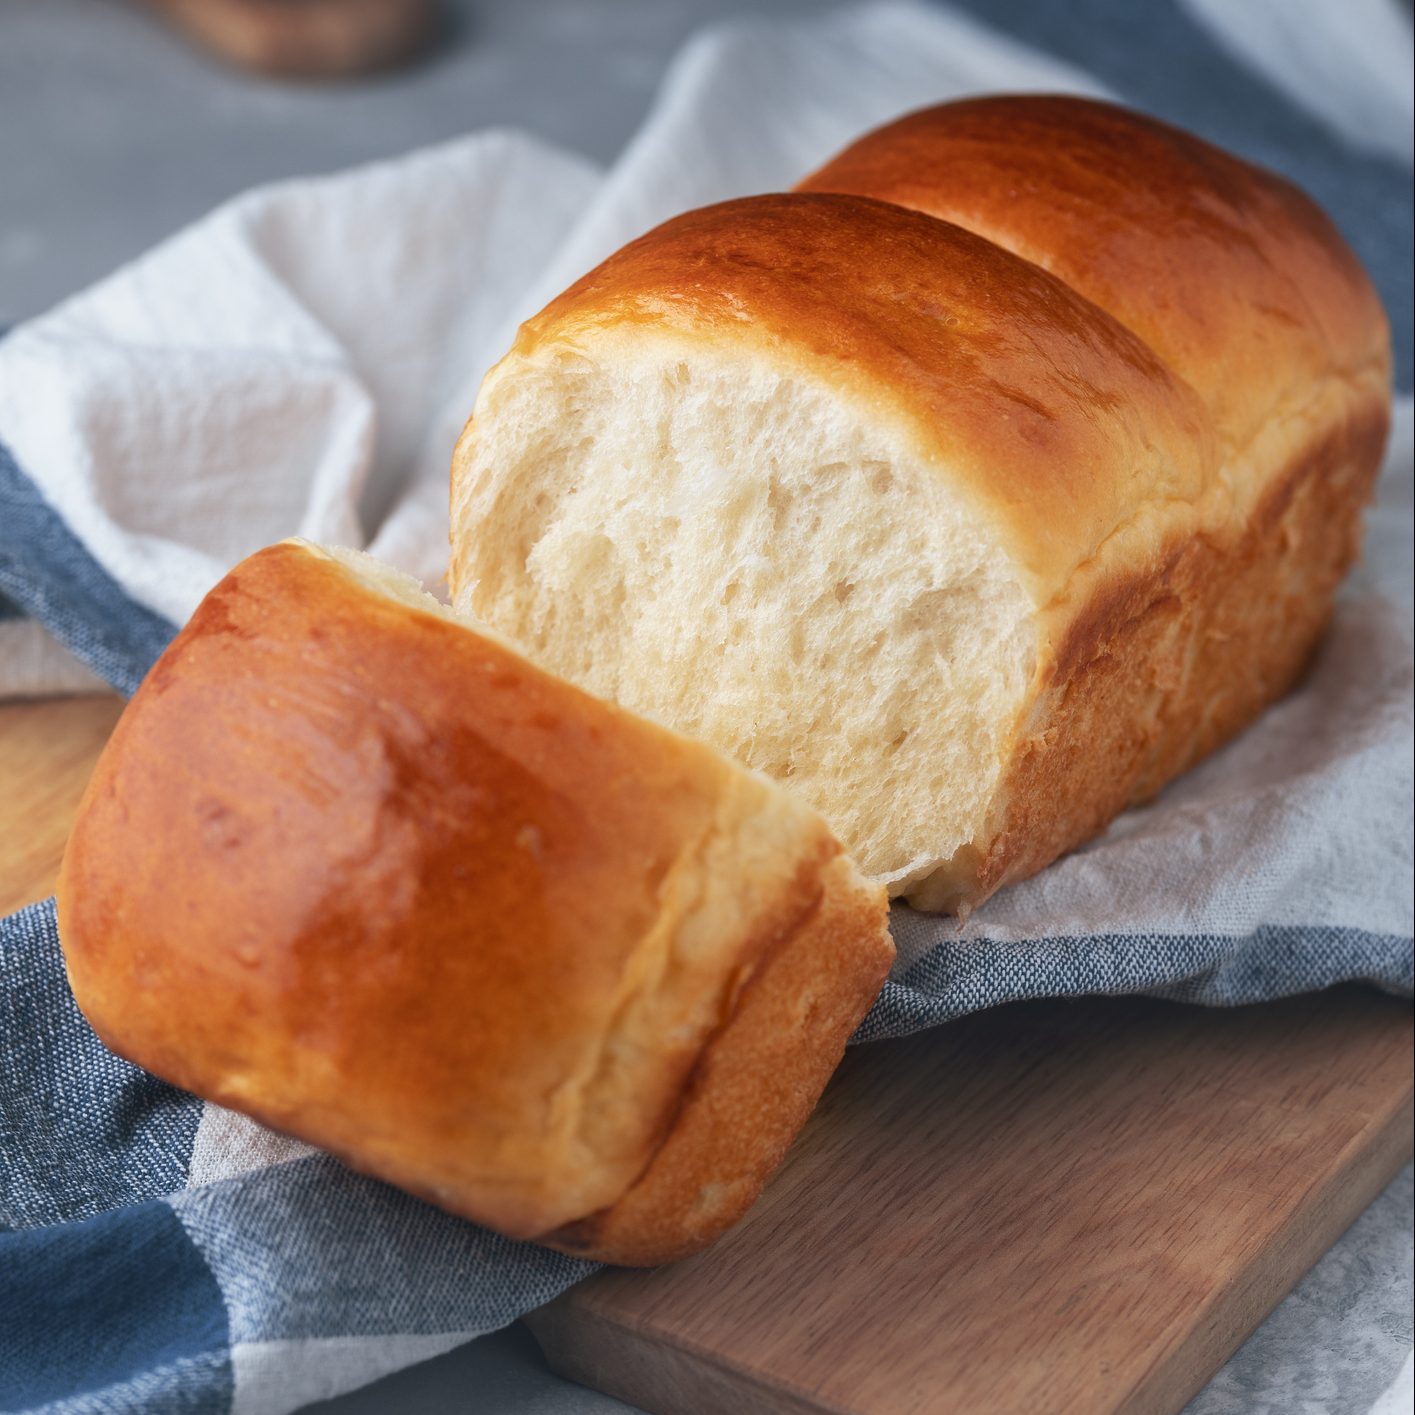 新鲜烘焙的自制北海道牛奶面包放在厨房毛巾上。日式松软面包。在家做饭。有选择性的重点。